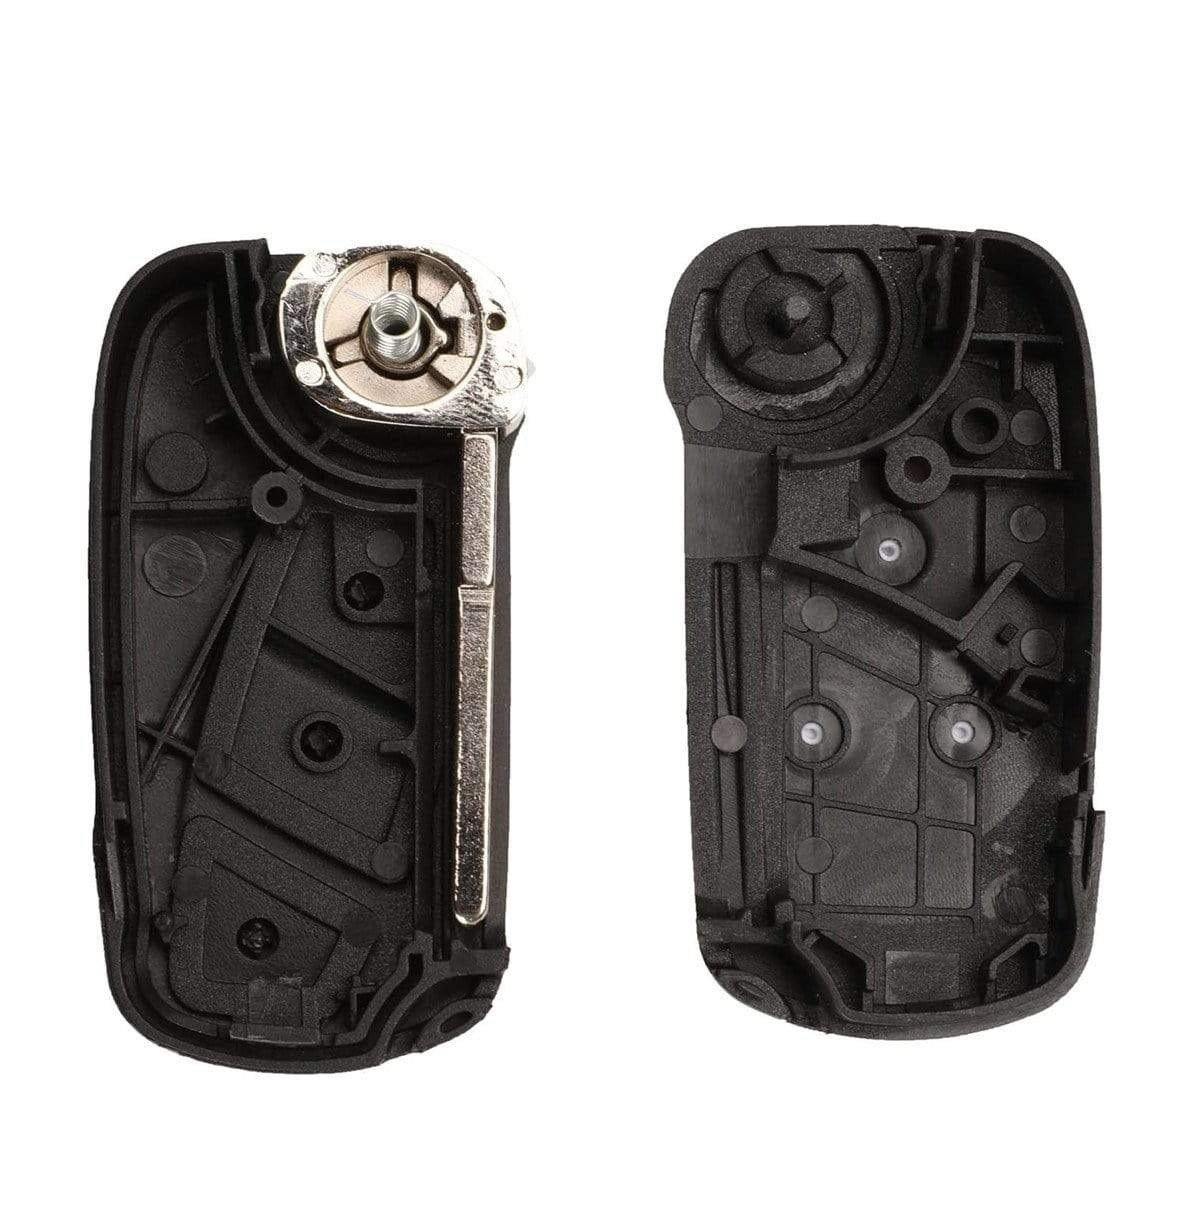 Fekete színű, 2 gombos Peugeot kulcsház, bicskakulcs belseje. SIP22 kulcsszárral.